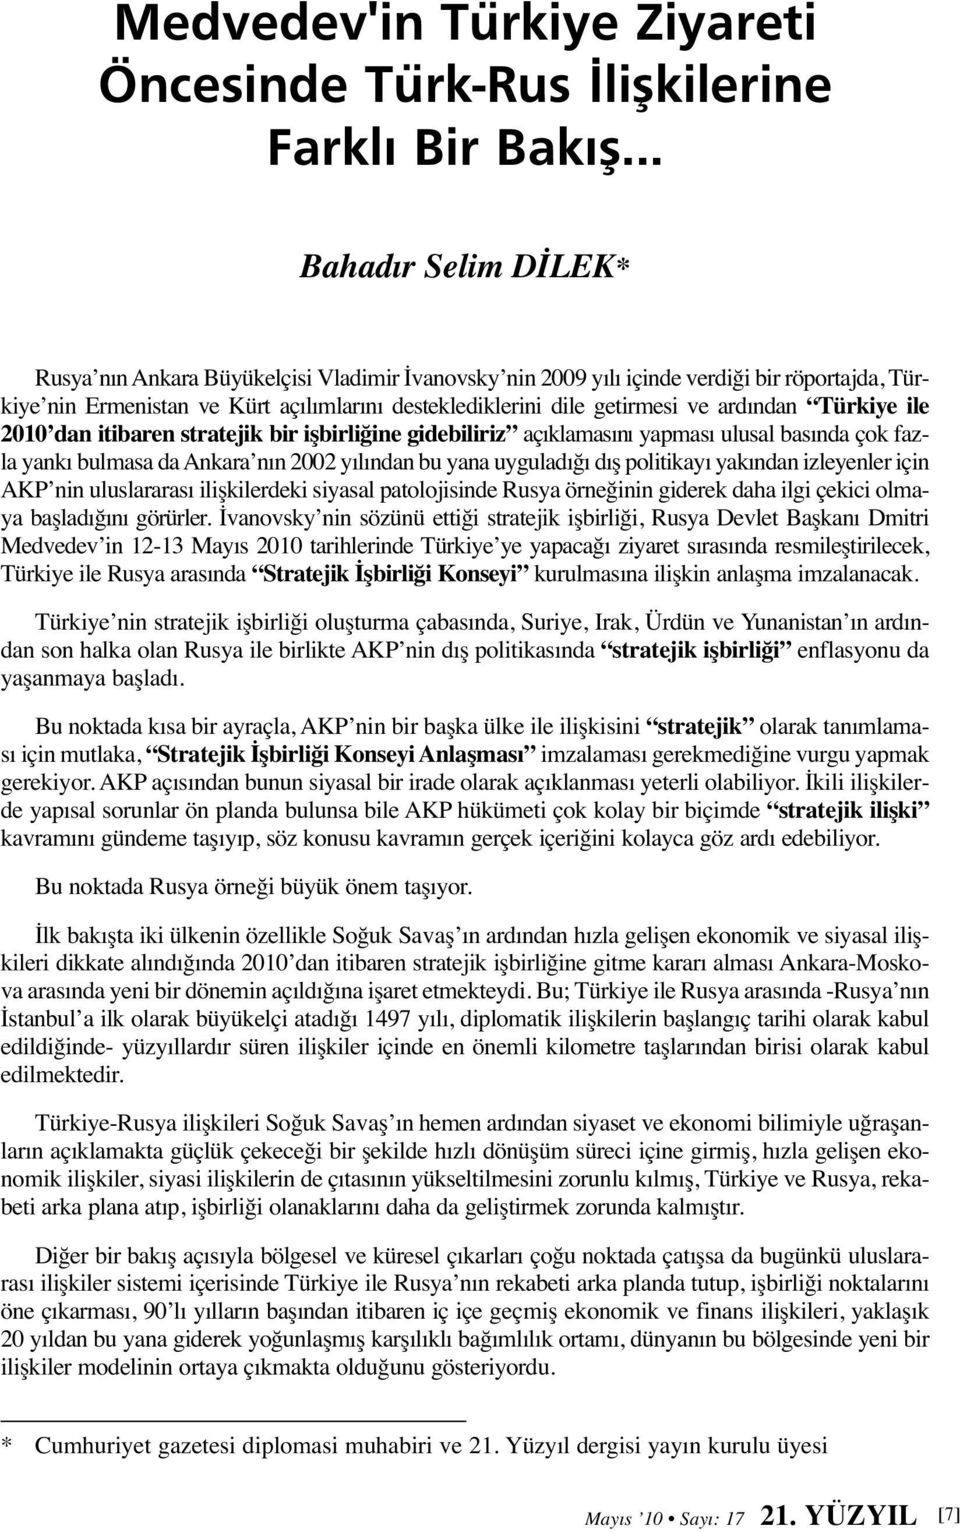 ardından Türkiye ile 2010 dan itibaren stratejik bir işbirliğine gidebiliriz açıklamasını yapması ulusal basında çok fazla yankı bulmasa da Ankara nın 2002 yılından bu yana uyguladığı dış politikayı